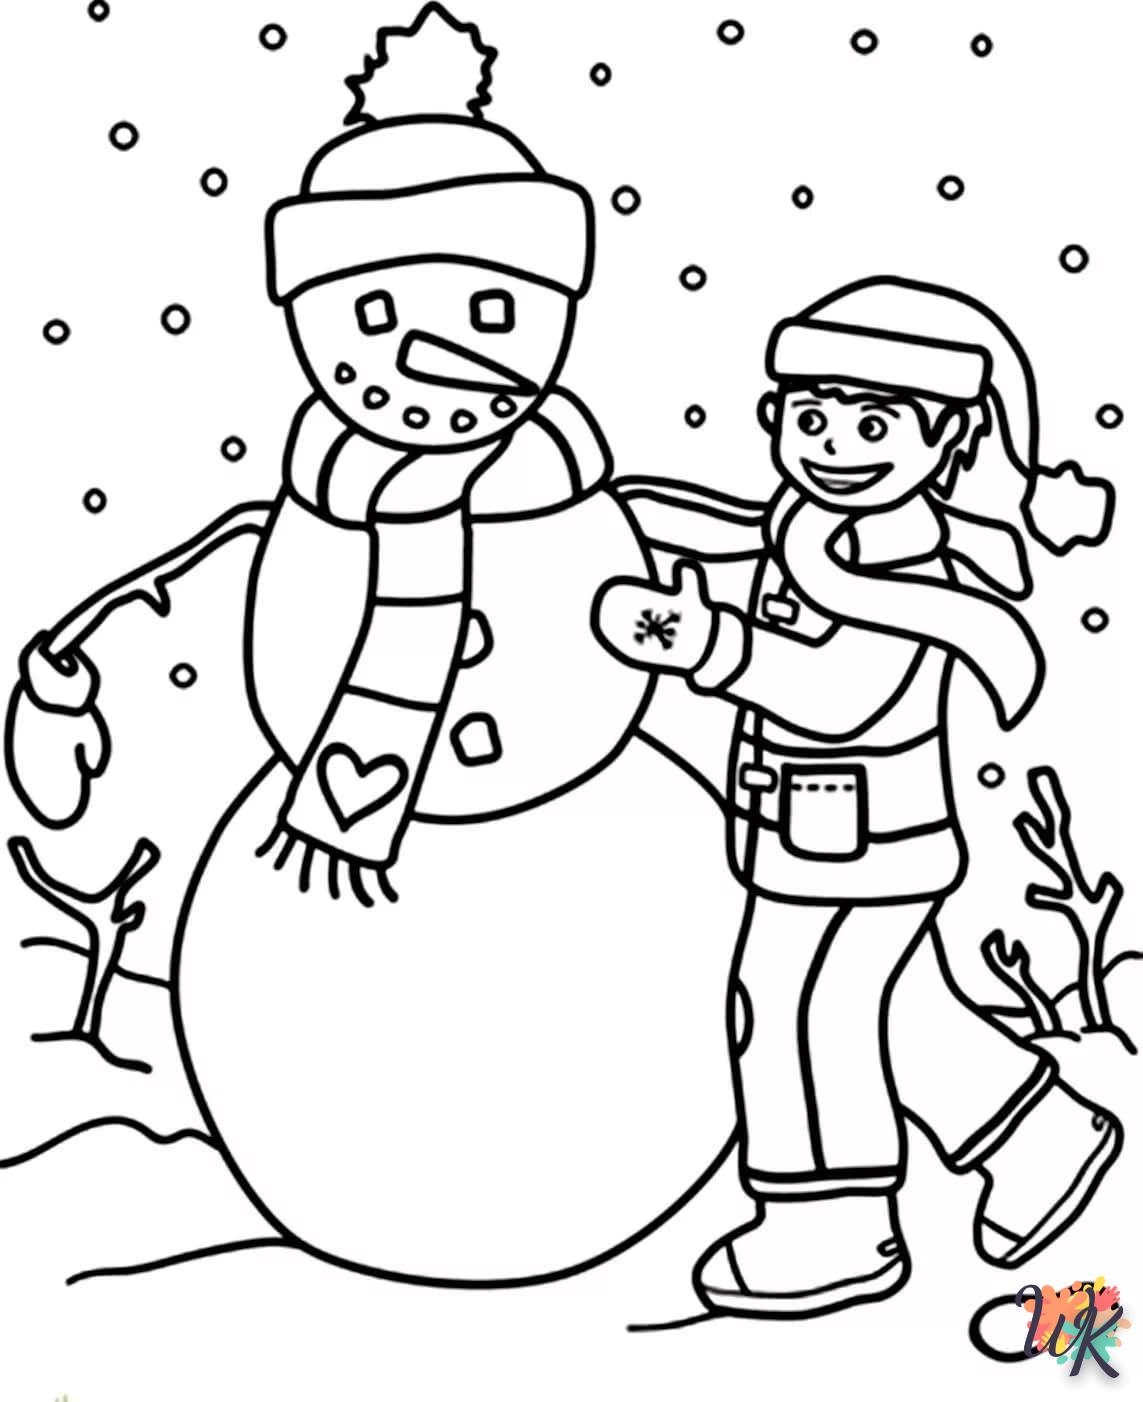 Dibujos para Colorear Muneco de nieve 65